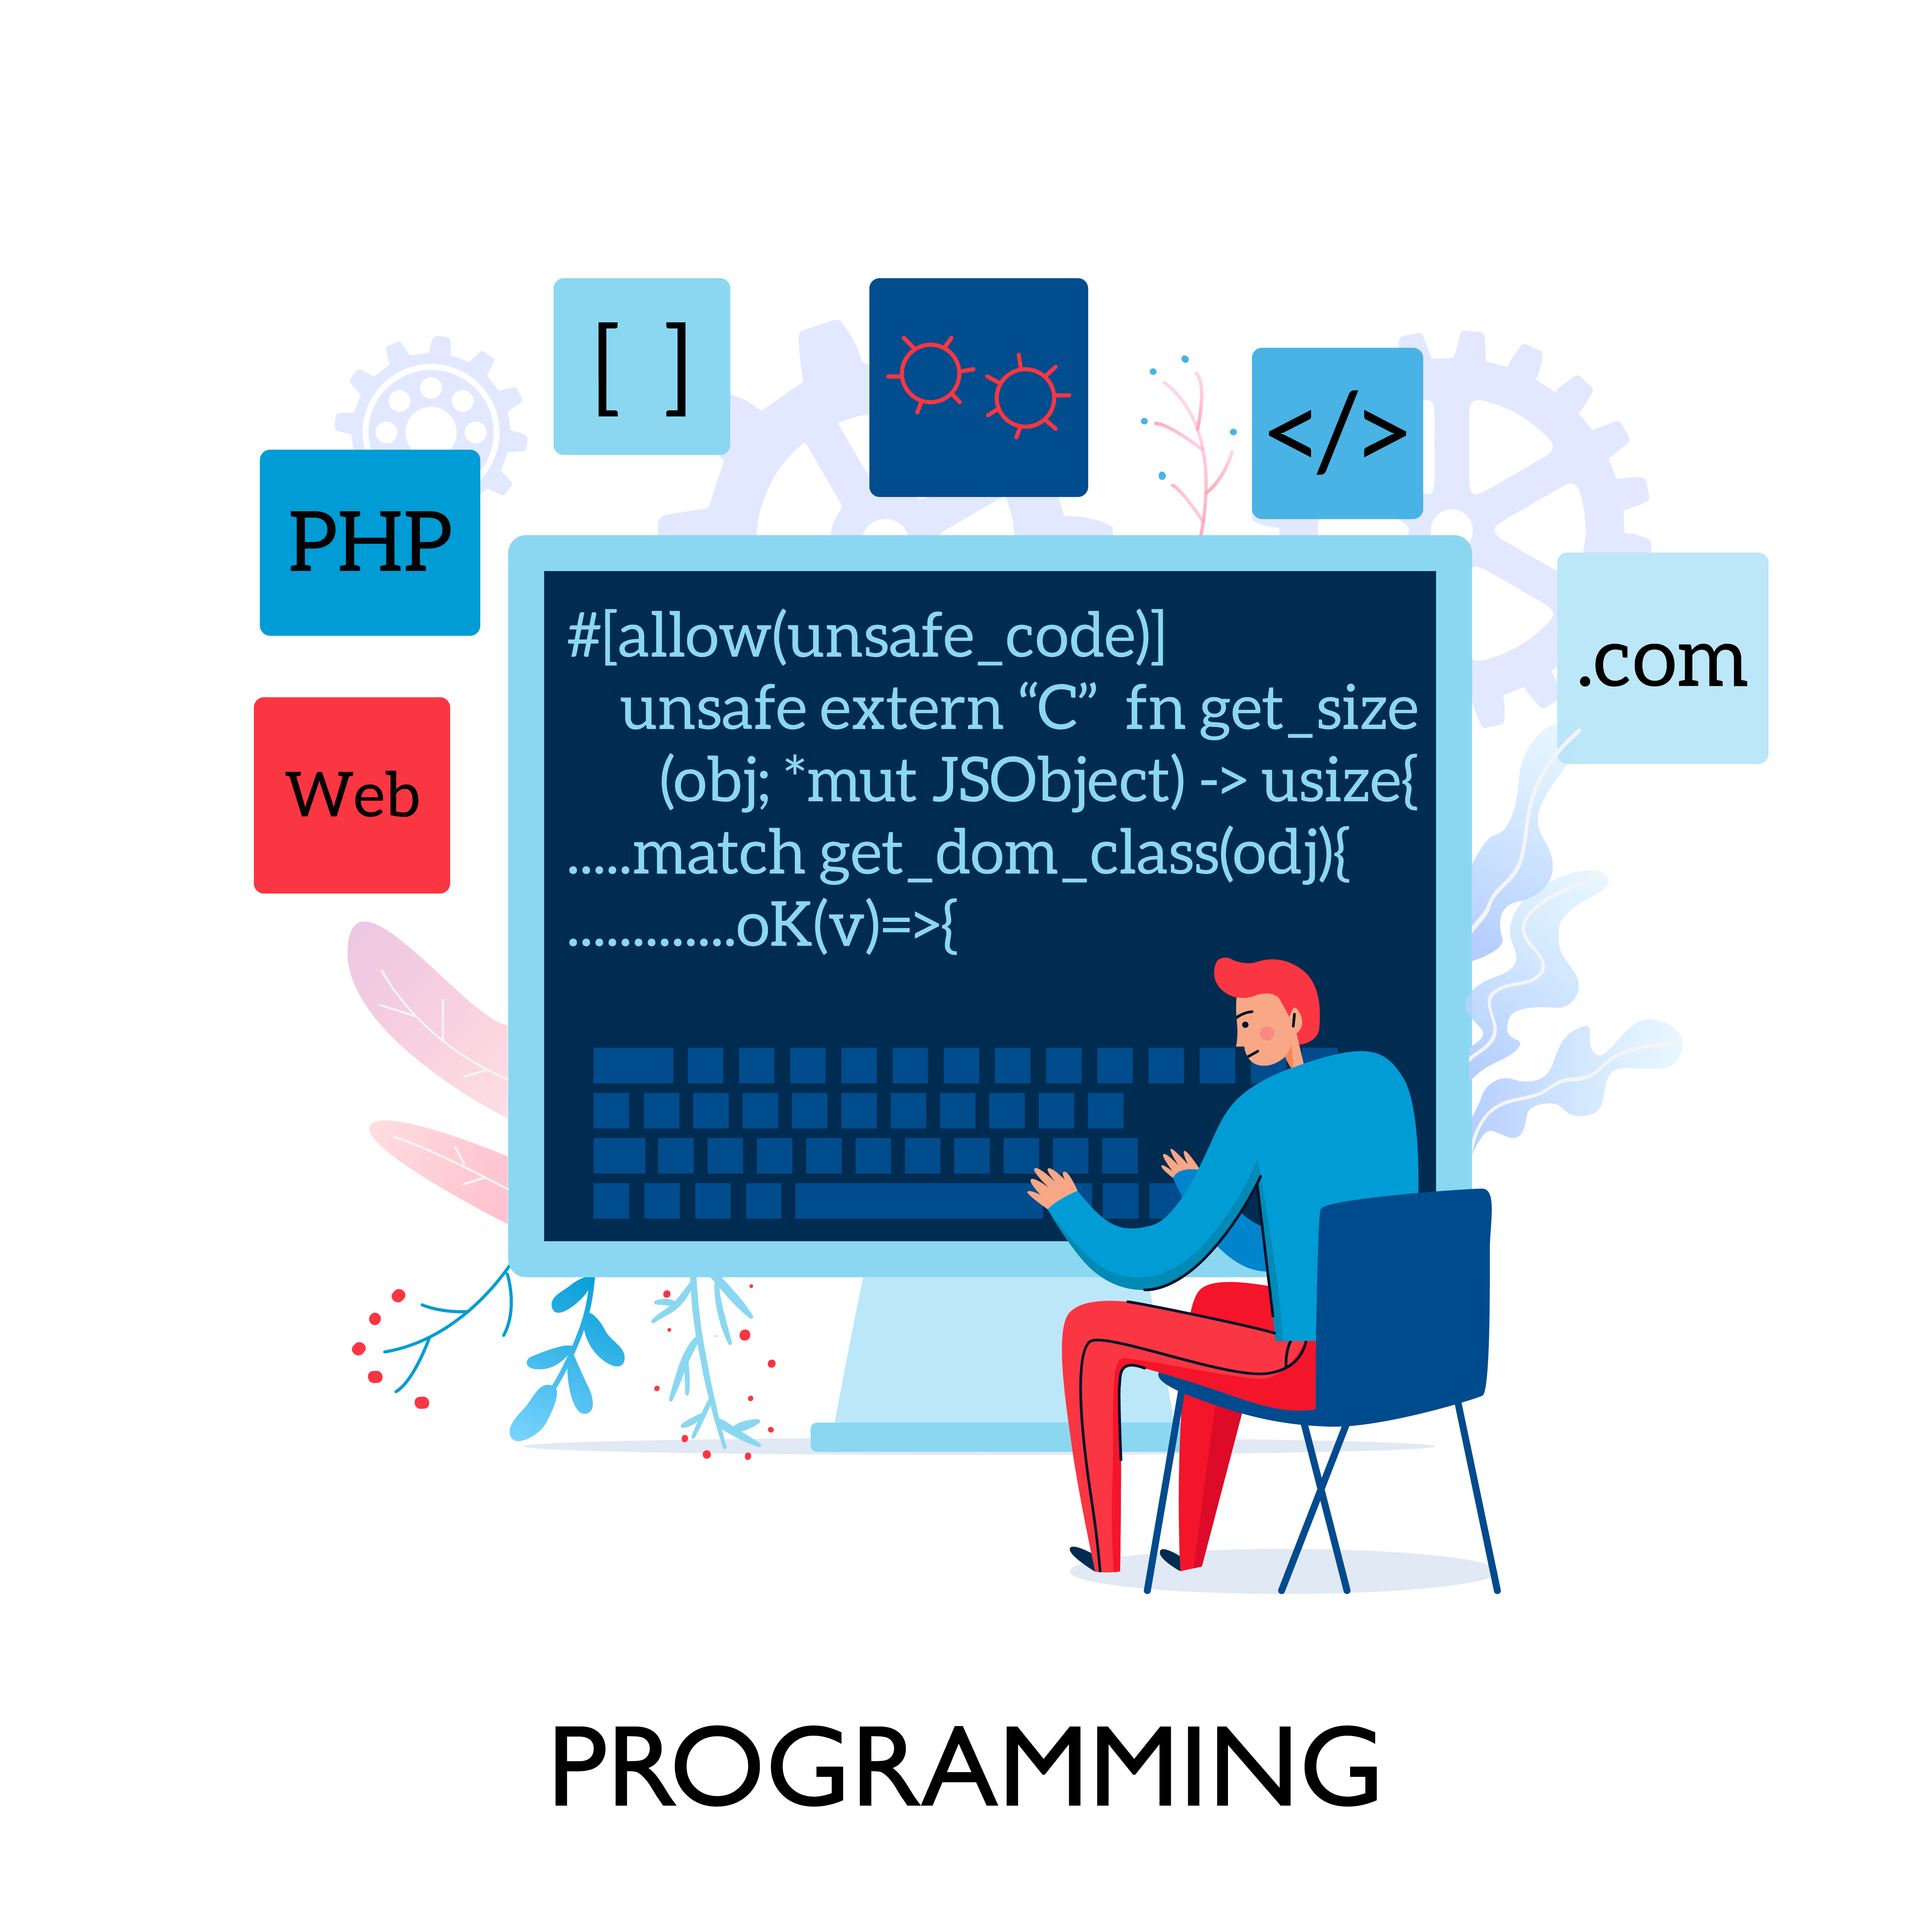 5 basic programming languages